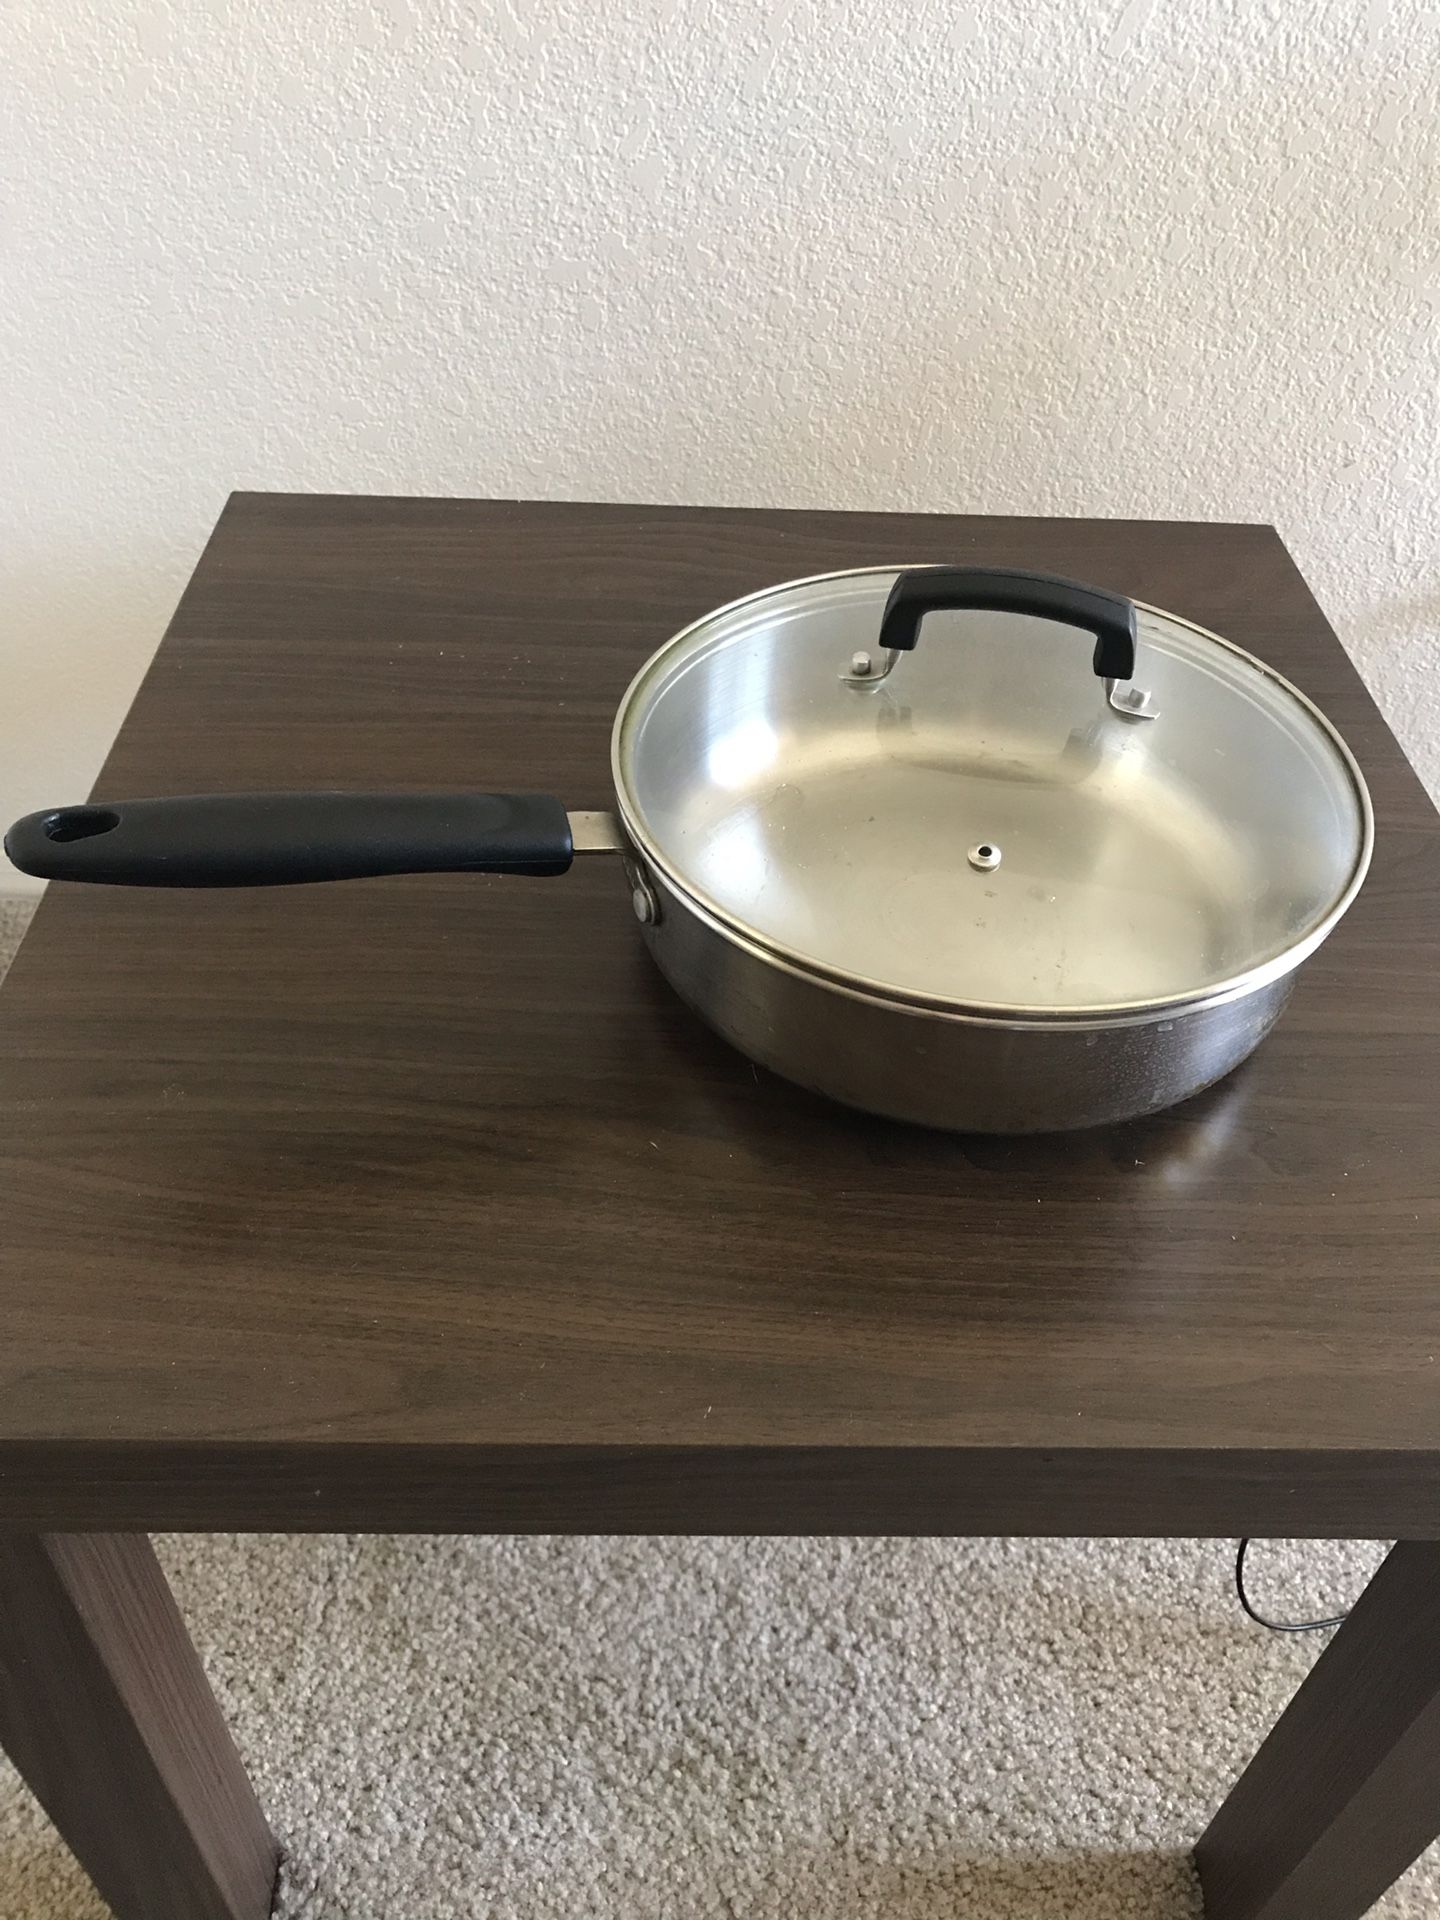 Cooking pan